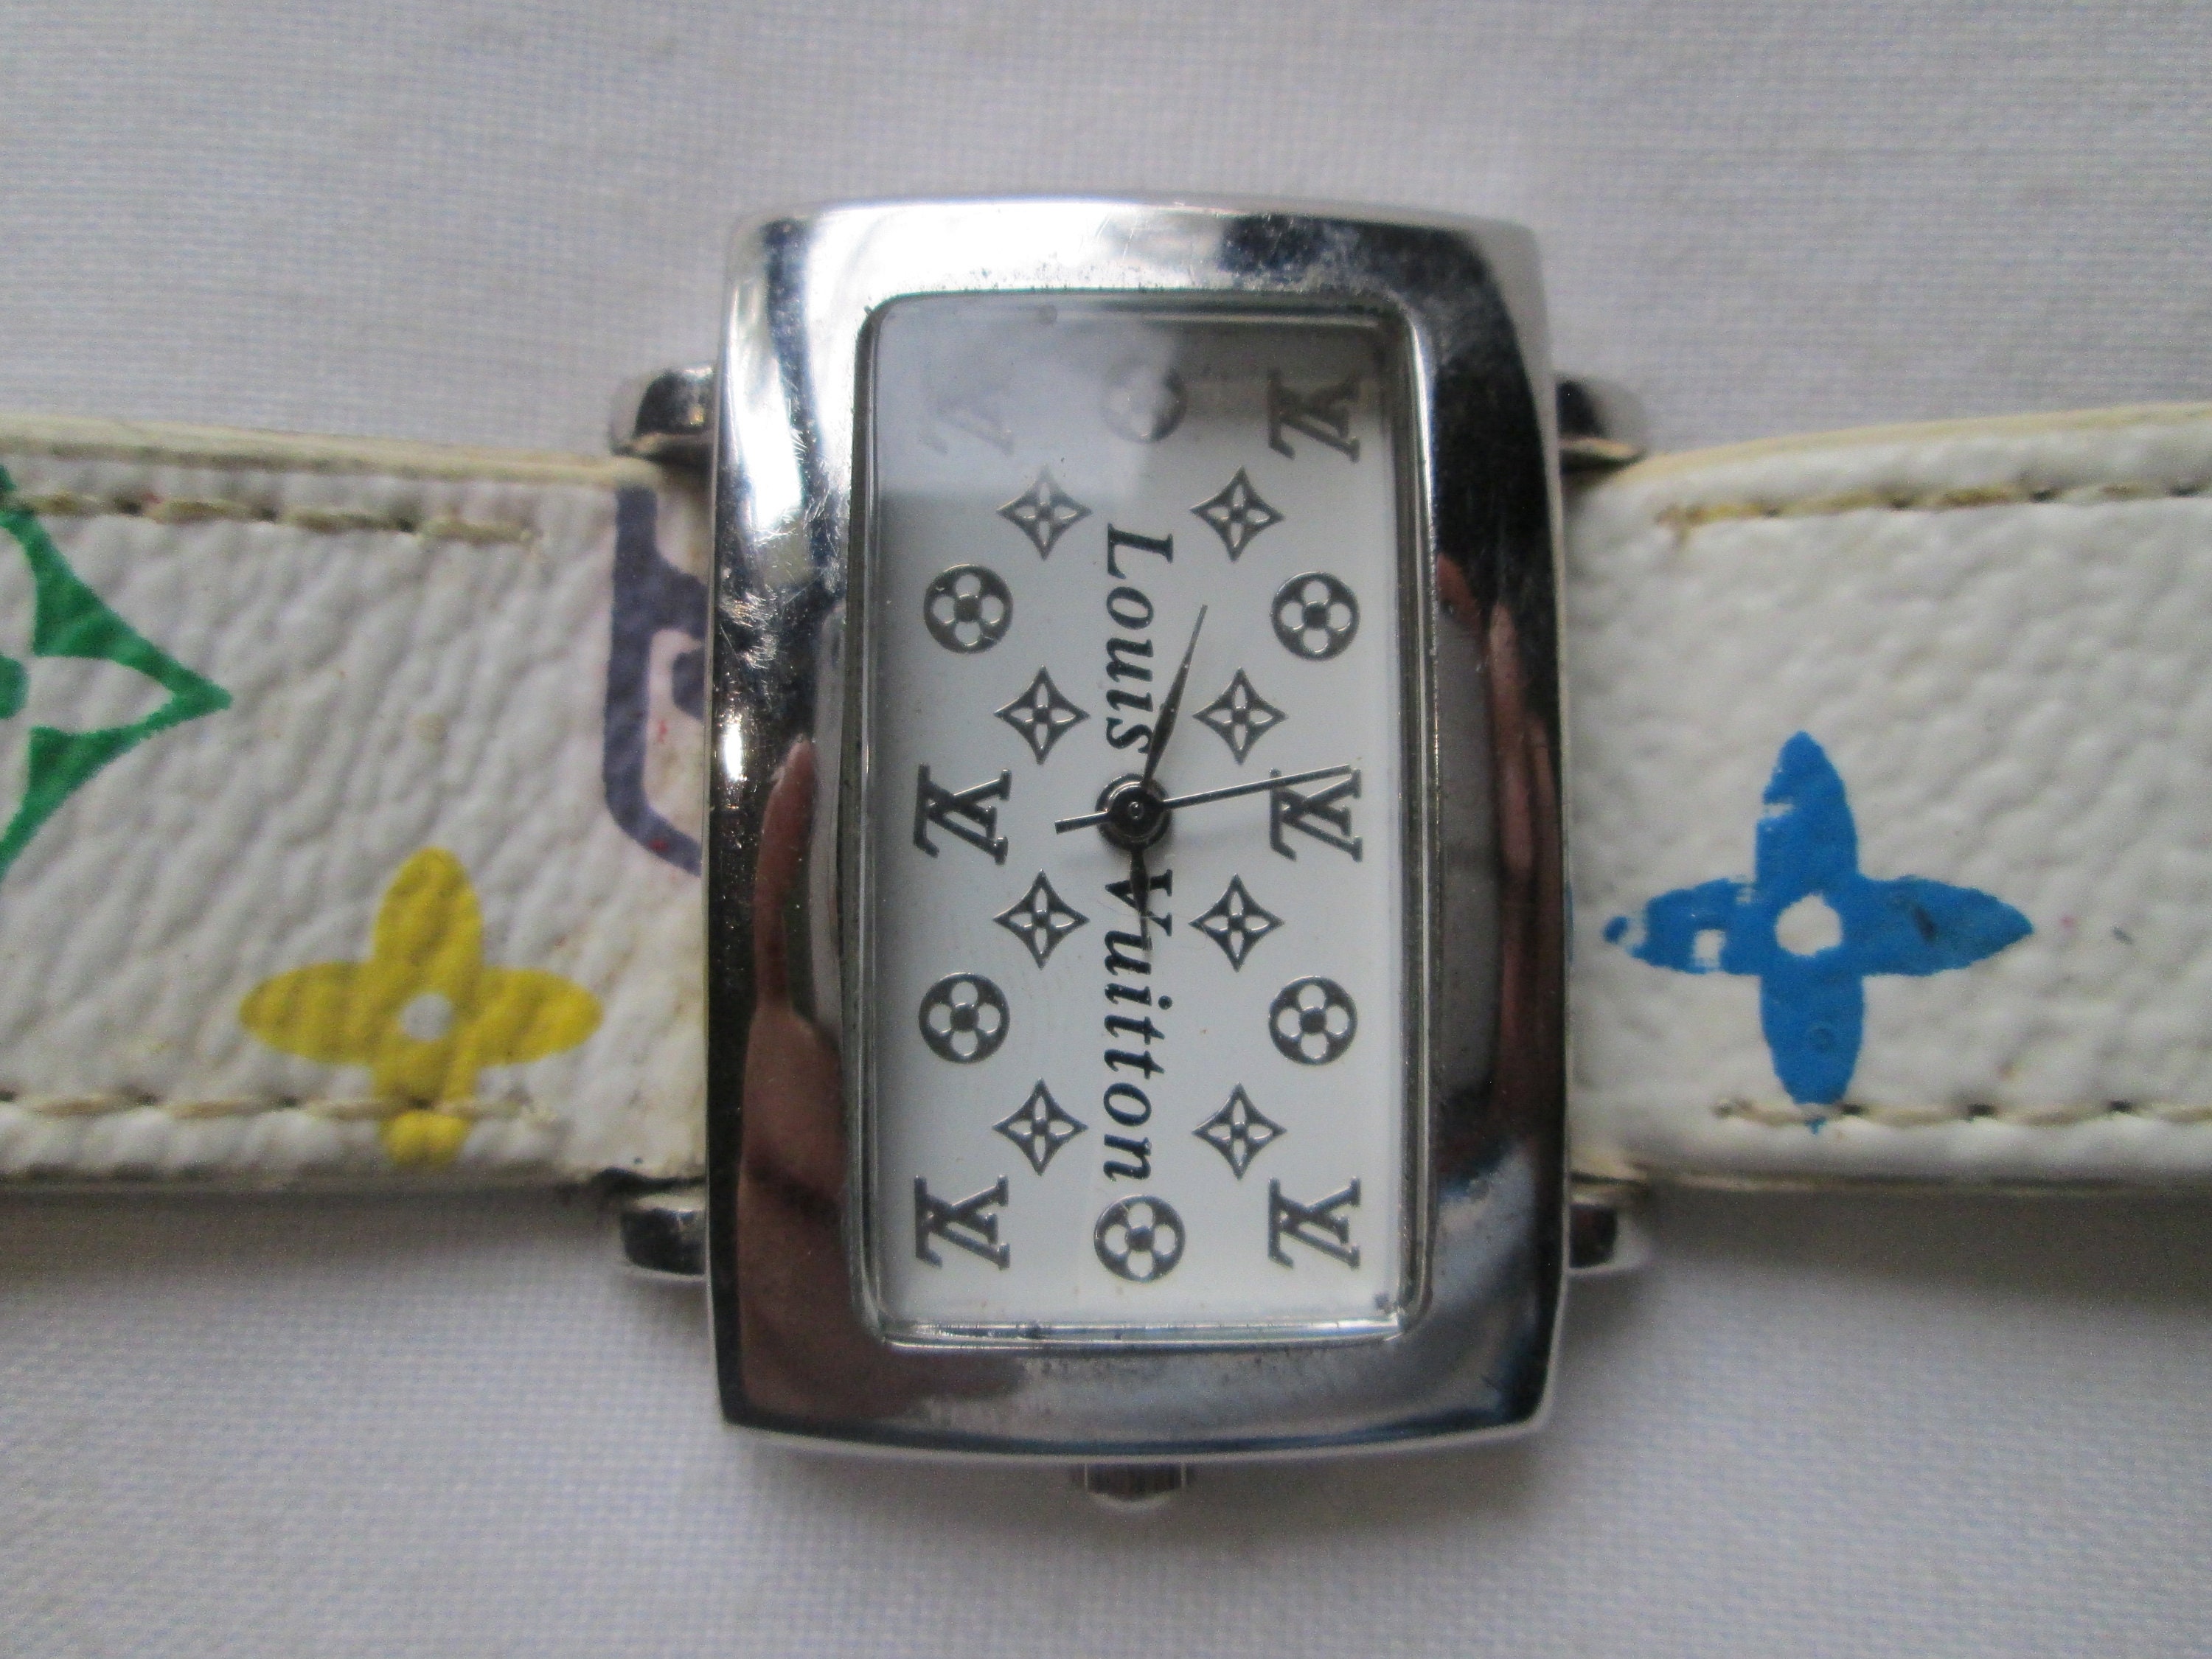 Louis Vuitton Reloj